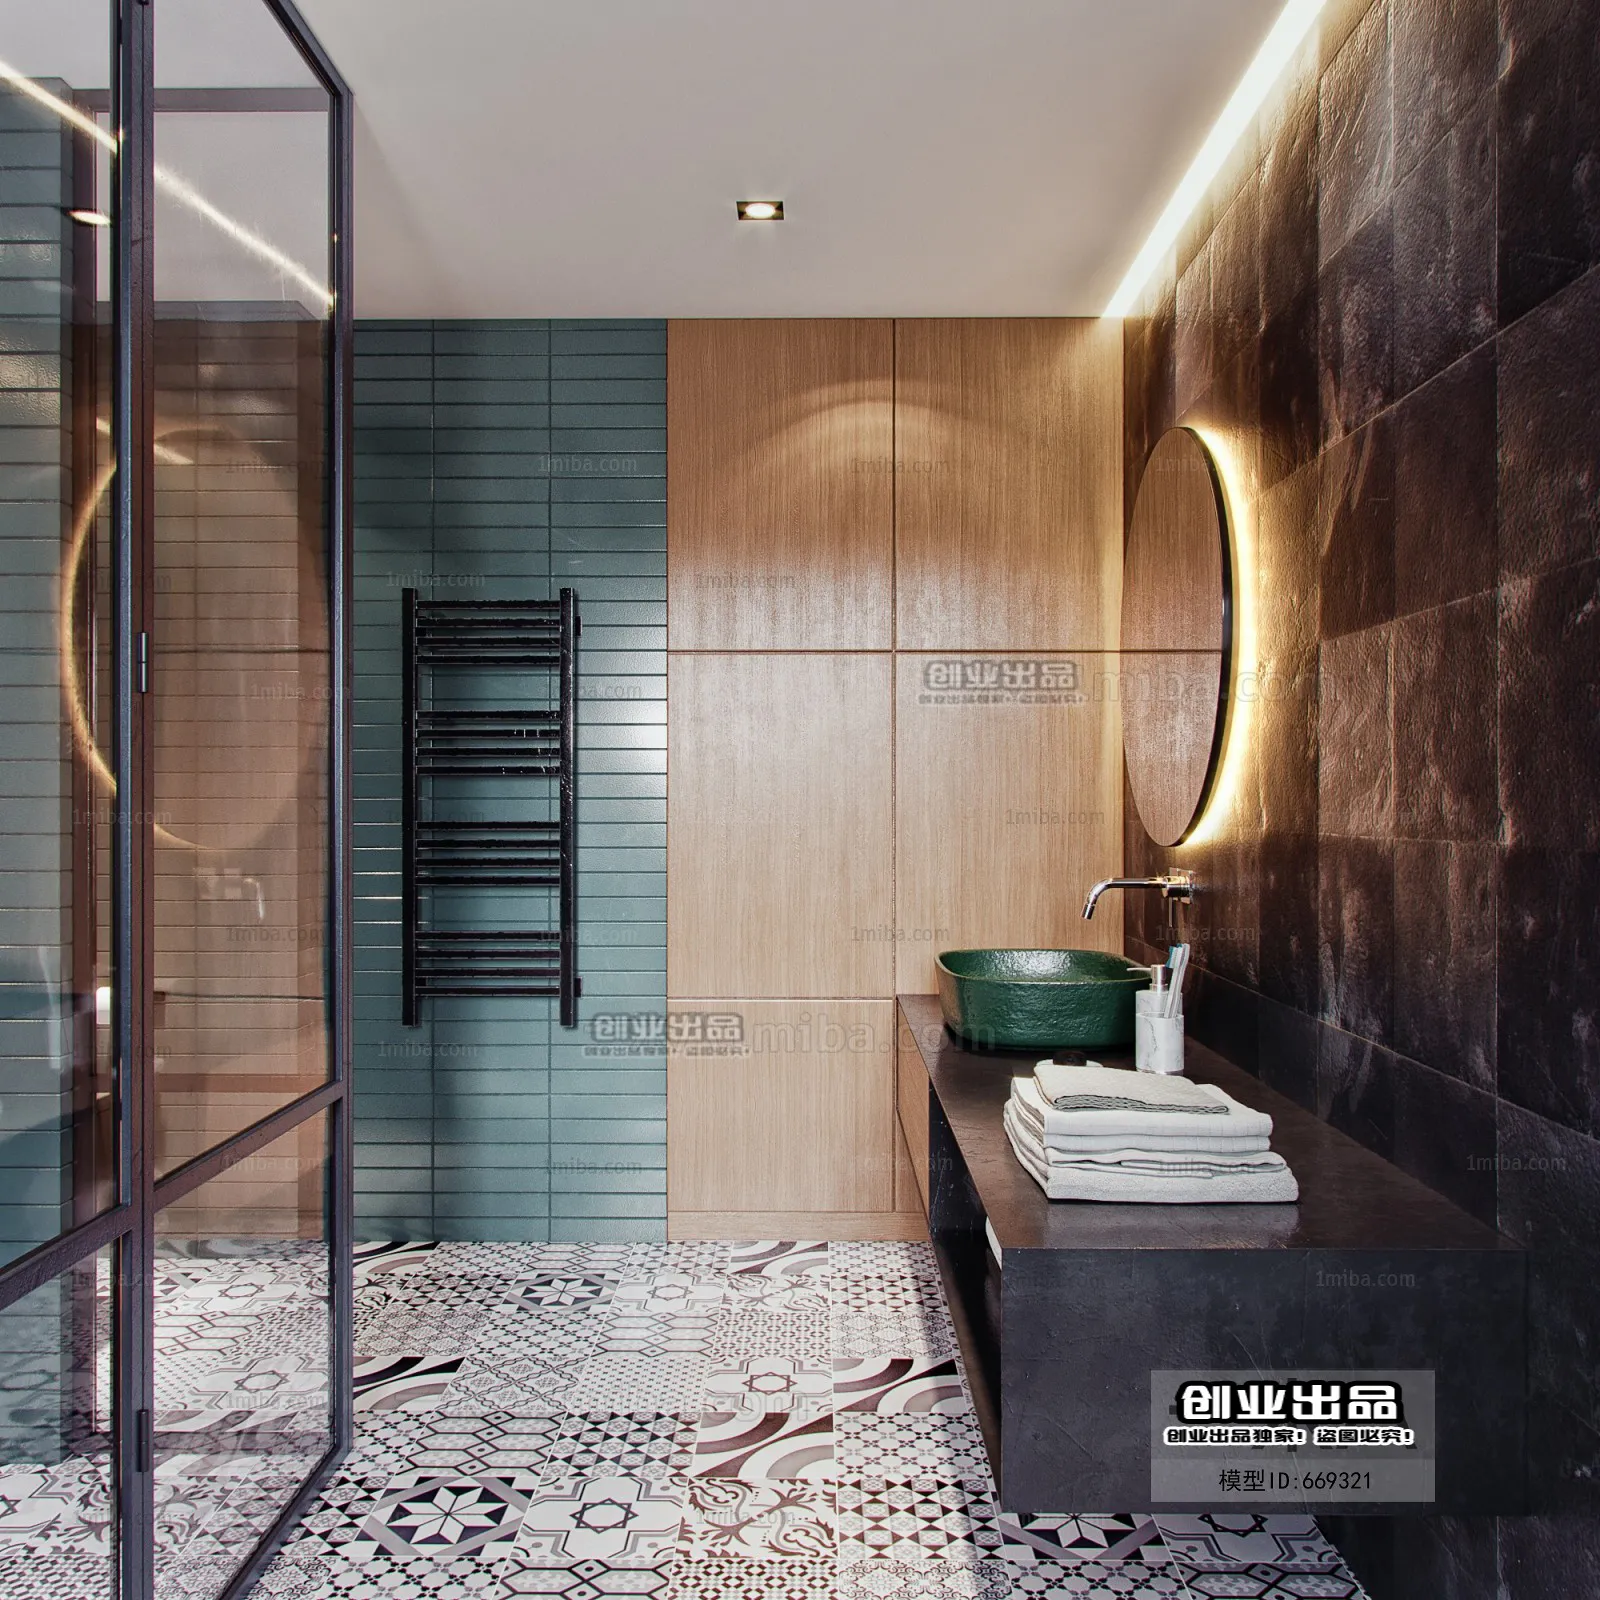 Bathroom – Scandinavian architecture – 012